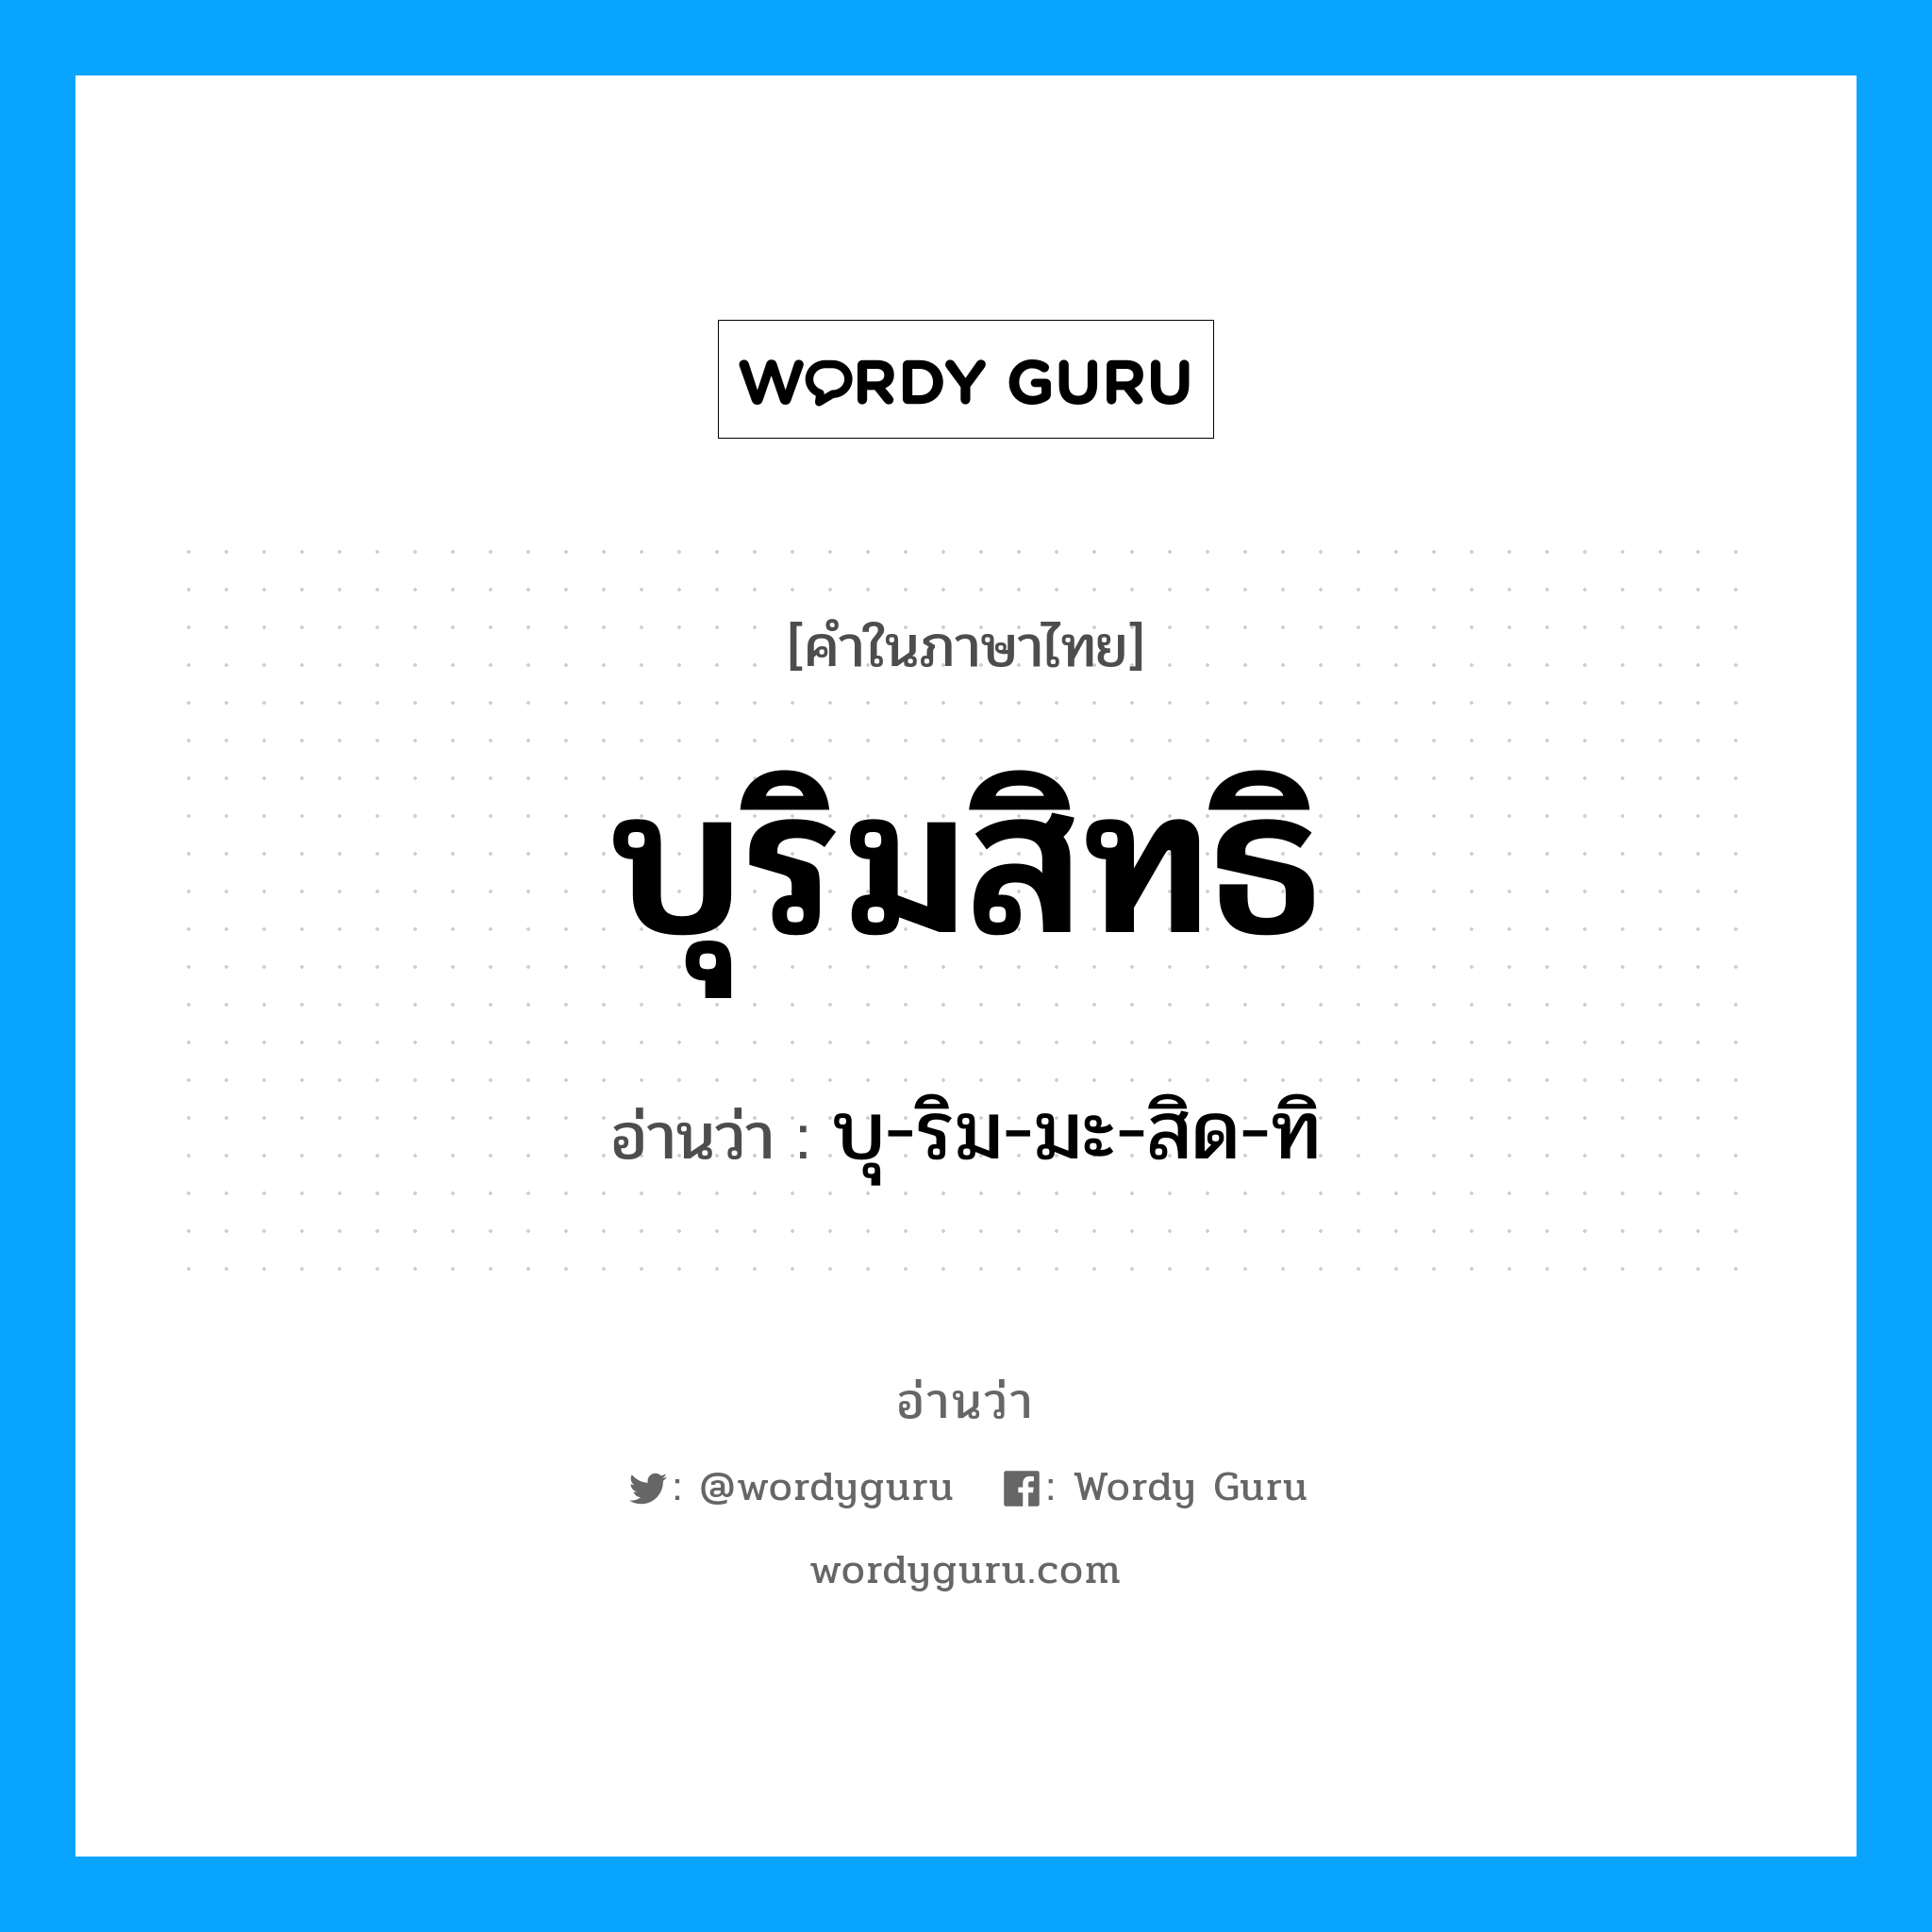 บุ-ริม-มะ-สิด-ทิ เป็นคำอ่านของคำไหน?, คำในภาษาไทย บุ-ริม-มะ-สิด-ทิ อ่านว่า บุริมสิทธิ